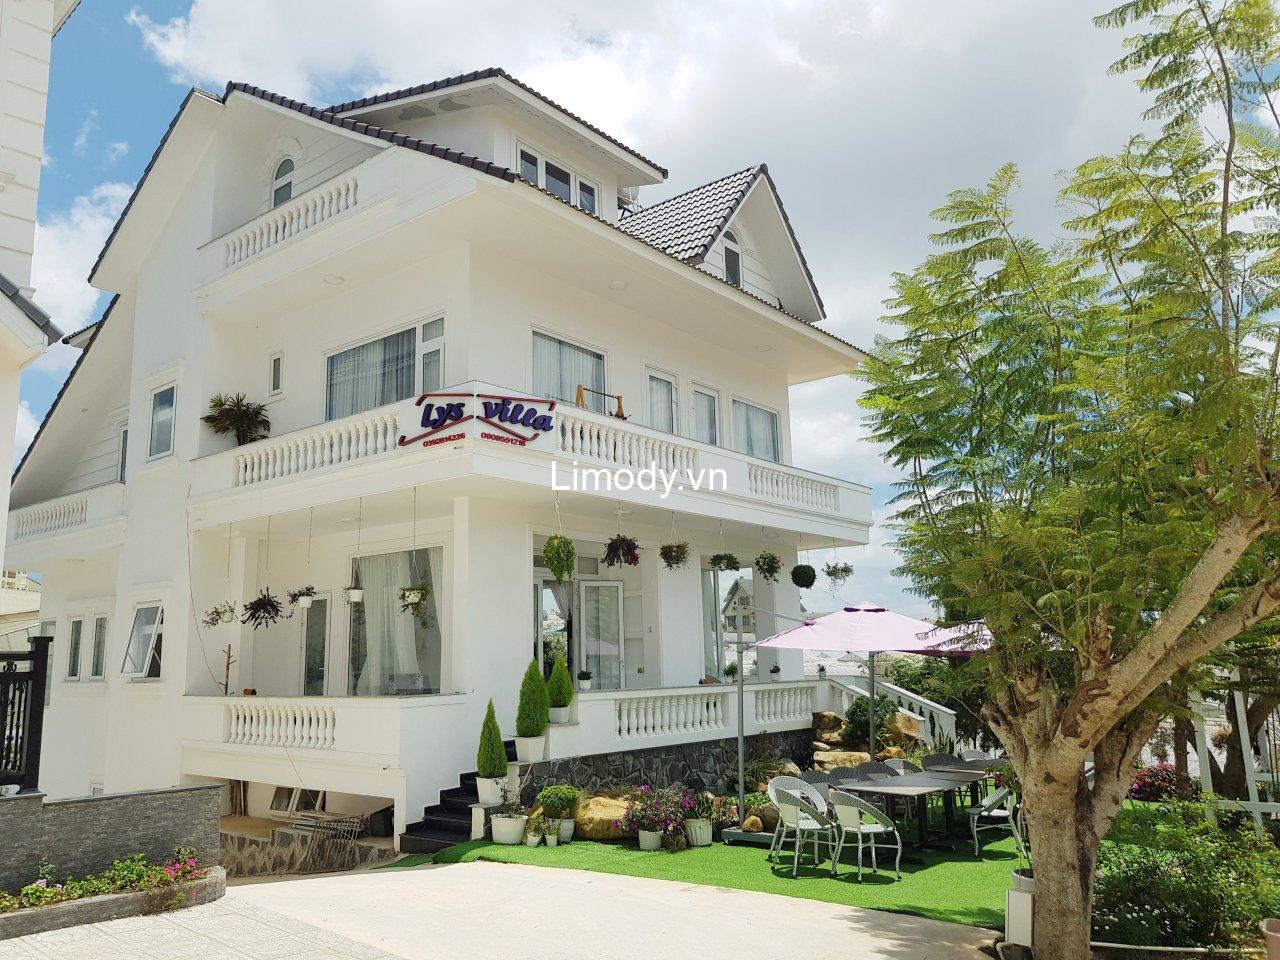 Top 20 Biệt thự villa Đà Lạt giá rẻ view đẹp cho thuê nguyên căn tốt nhất